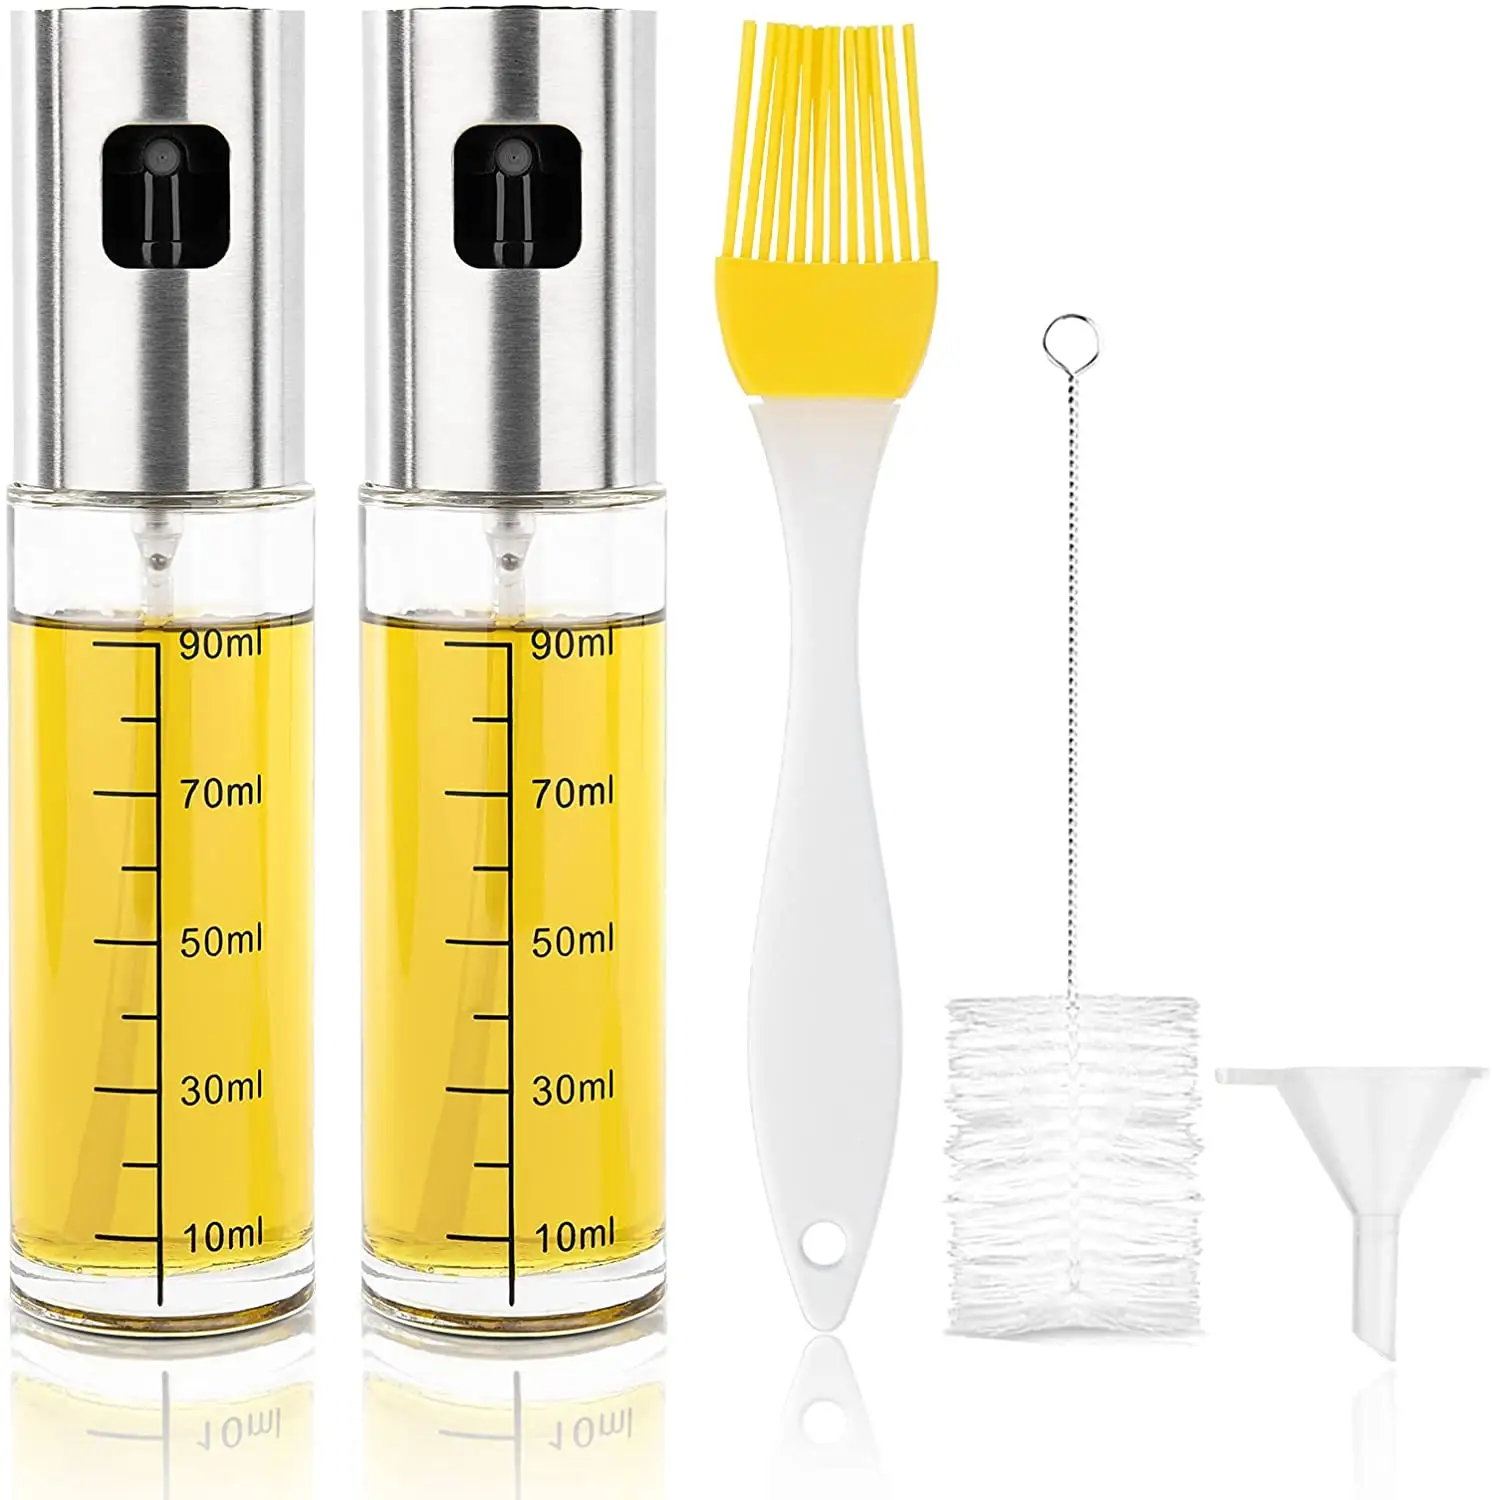 Botella de spray de cocina genérica, pulverizador de aceite reutilizable, pulverizador de vidrio para cocina, pulverizador de aceite de oliva